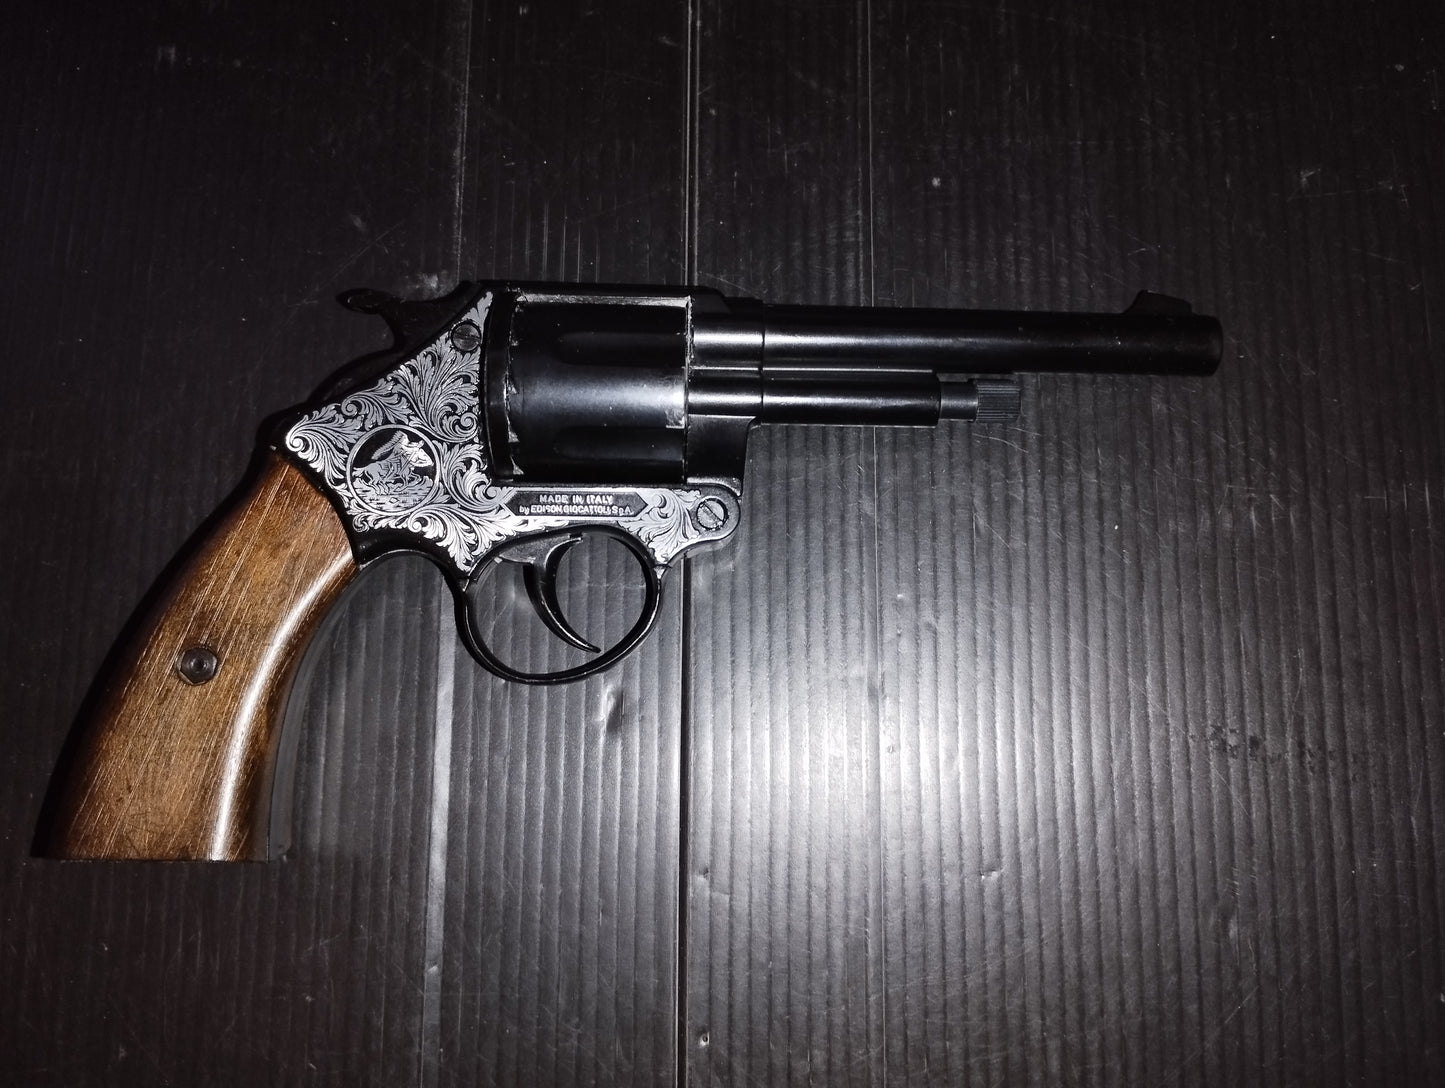 Western Revolver Susanna 70

Prodotto negli anni 70 da Edison Giocattoli

Made in Italy